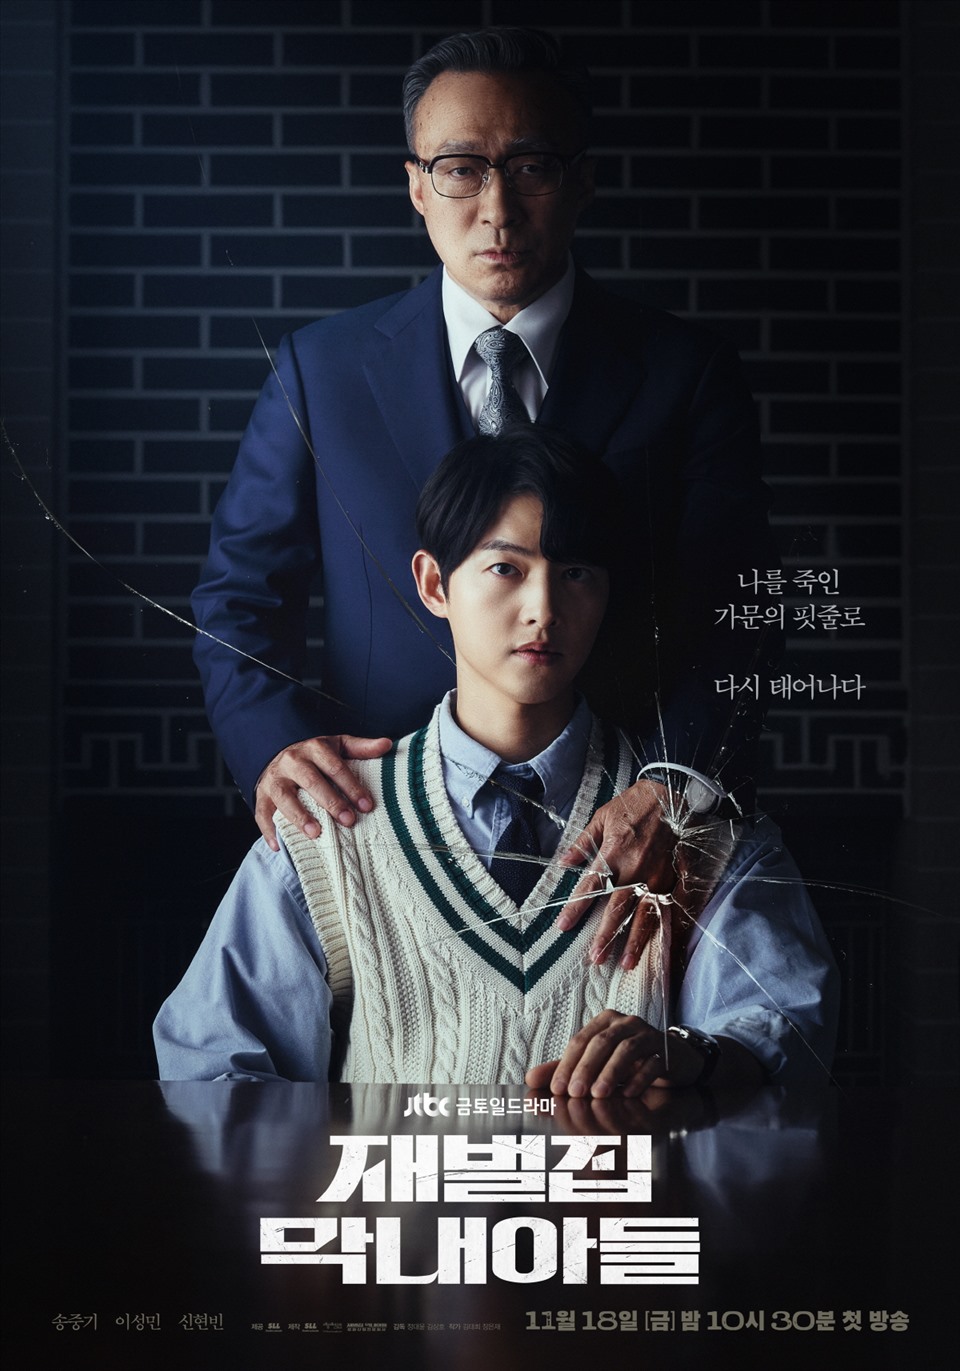 Poster phim “Reborn Rich” do Song Joong Ki đóng chính. Ảnh: Naver